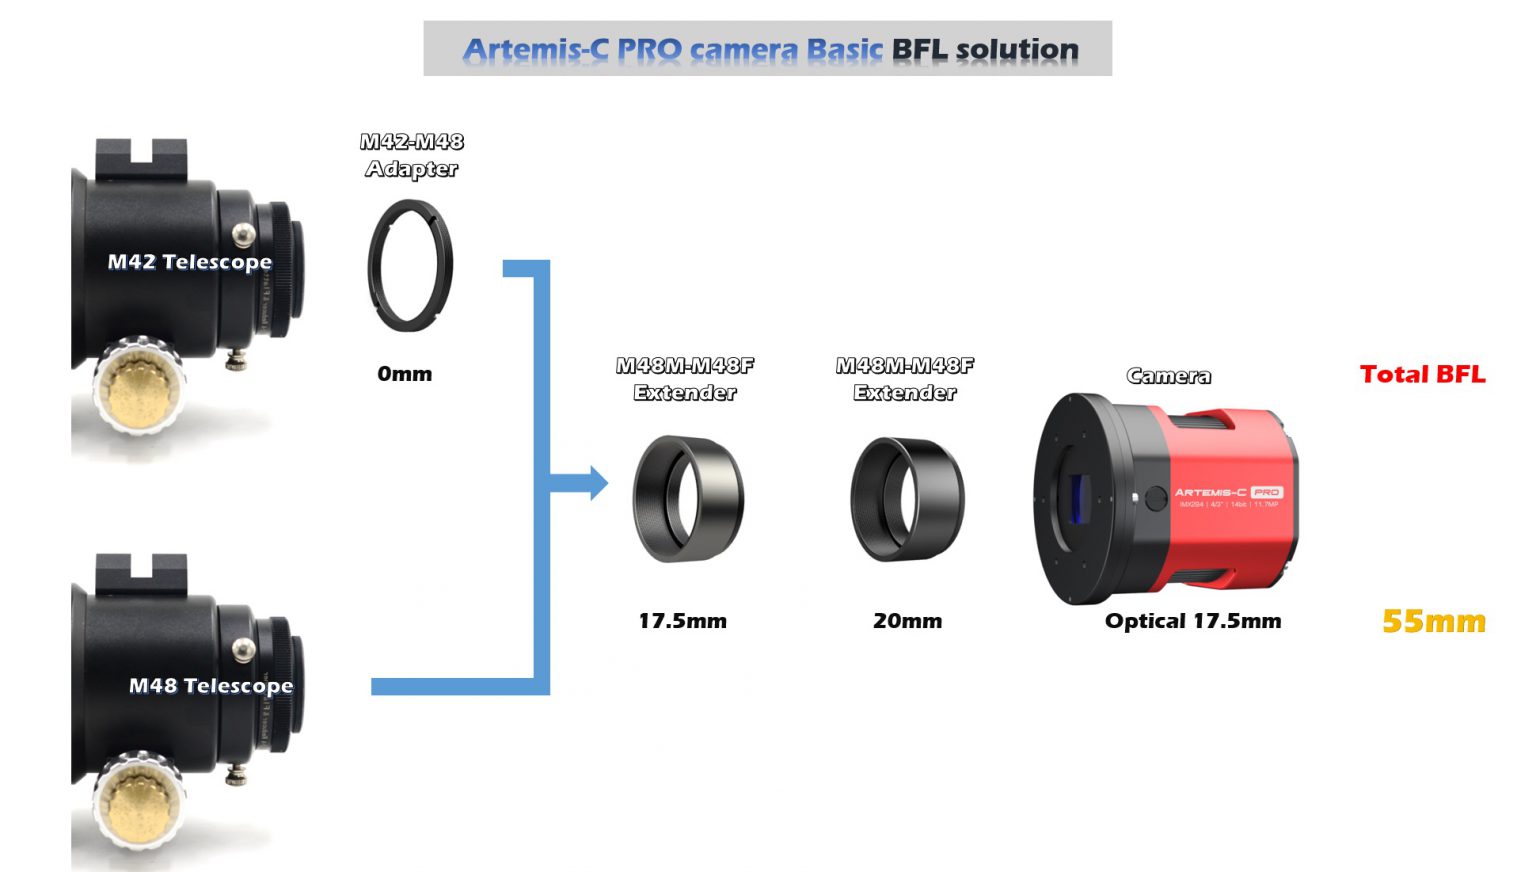  Camera Player One Artemis Color Pro con sensore retro illuminato Starvis IMX294
